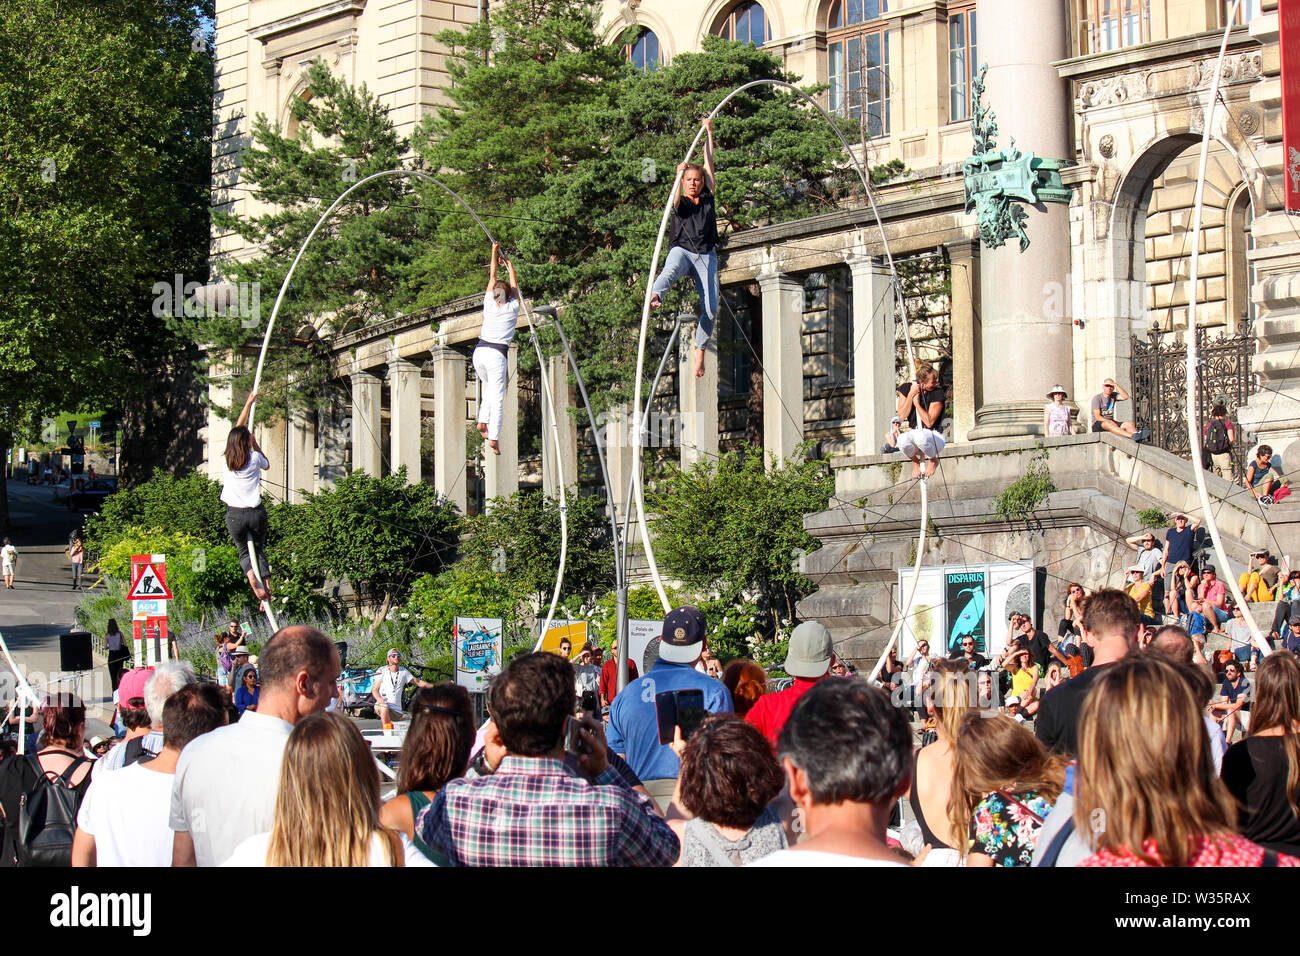 Lausanne, Schweiz - 9. Juli 2019: Festival de la Cite in den Straßen der Schweizer Stadt. Traditionelle kulturelle Veranstaltung mit Konzerten, Theater, Tanz, bildende Kunst oder Zirkus. Bis zu 100.000 Besucher in 6 Tagen Stockfoto